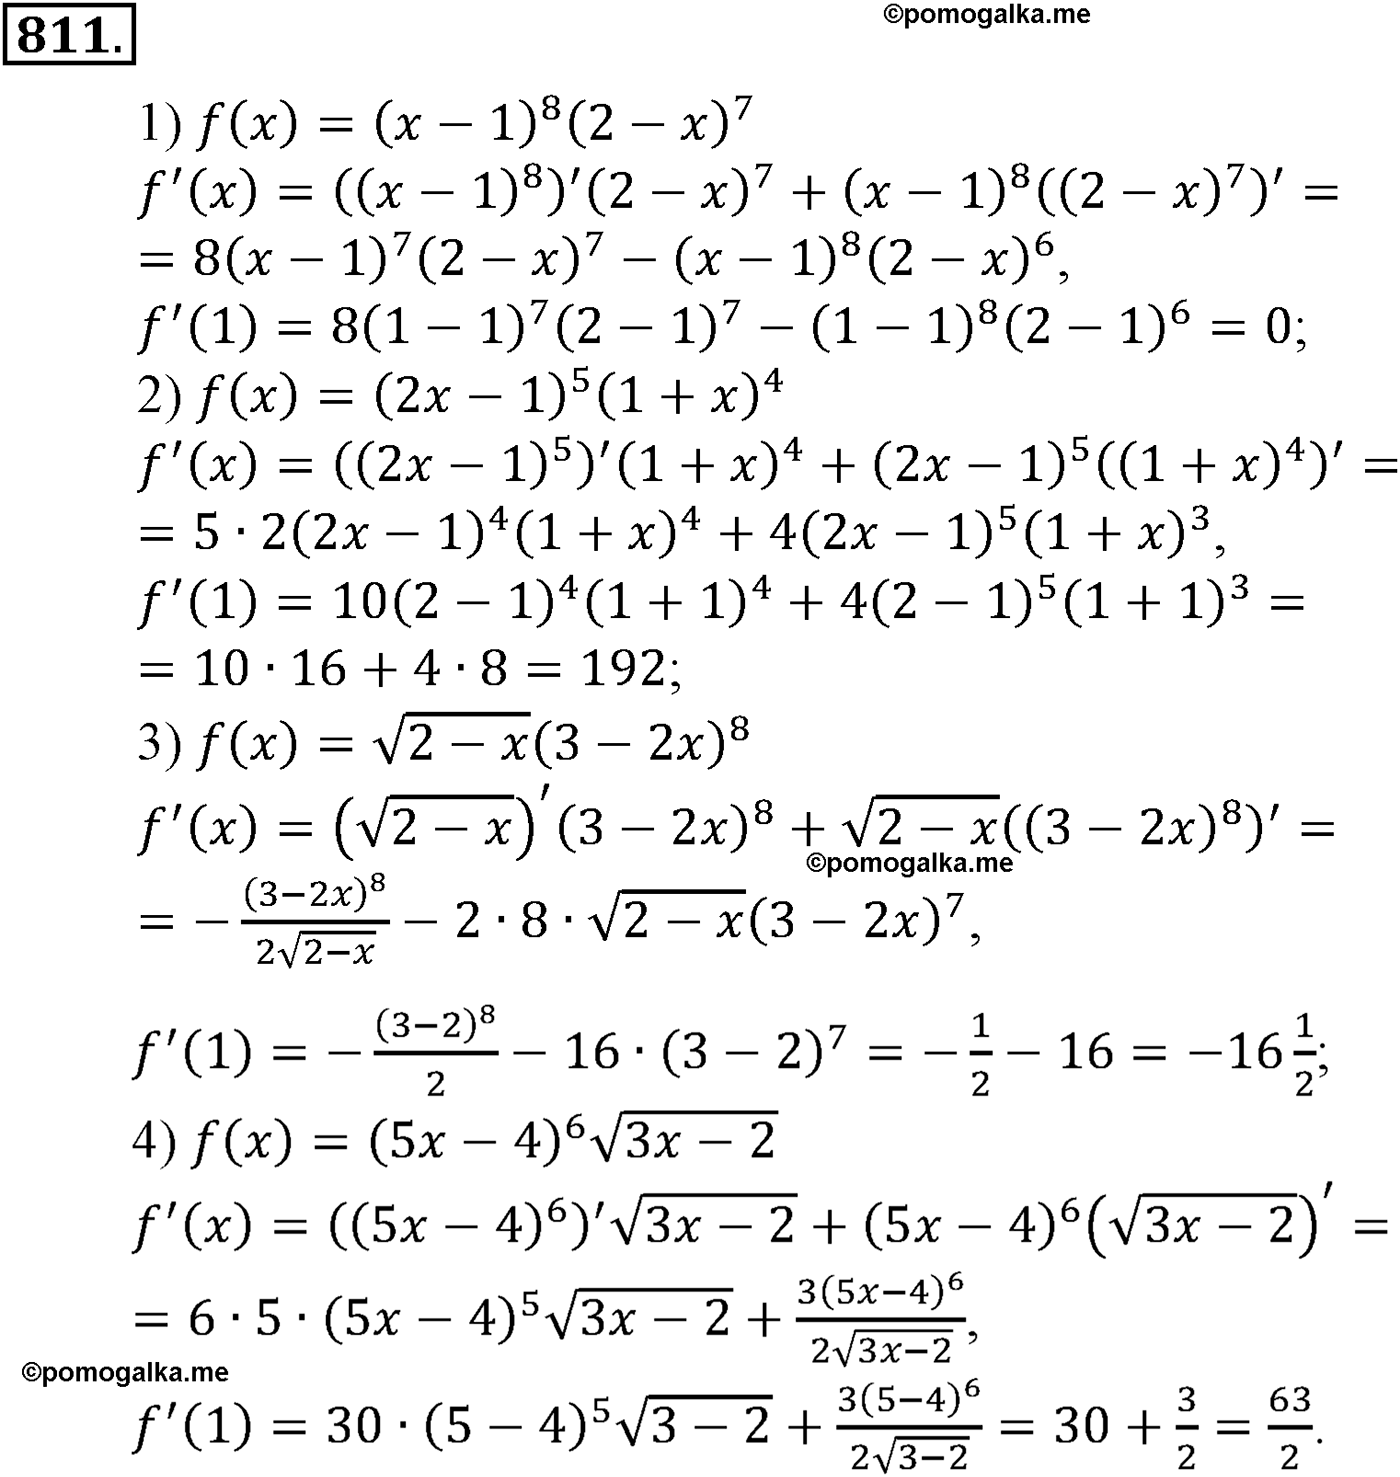 разбор задачи №811 по алгебре за 10-11 класс из учебника Алимова, Колягина